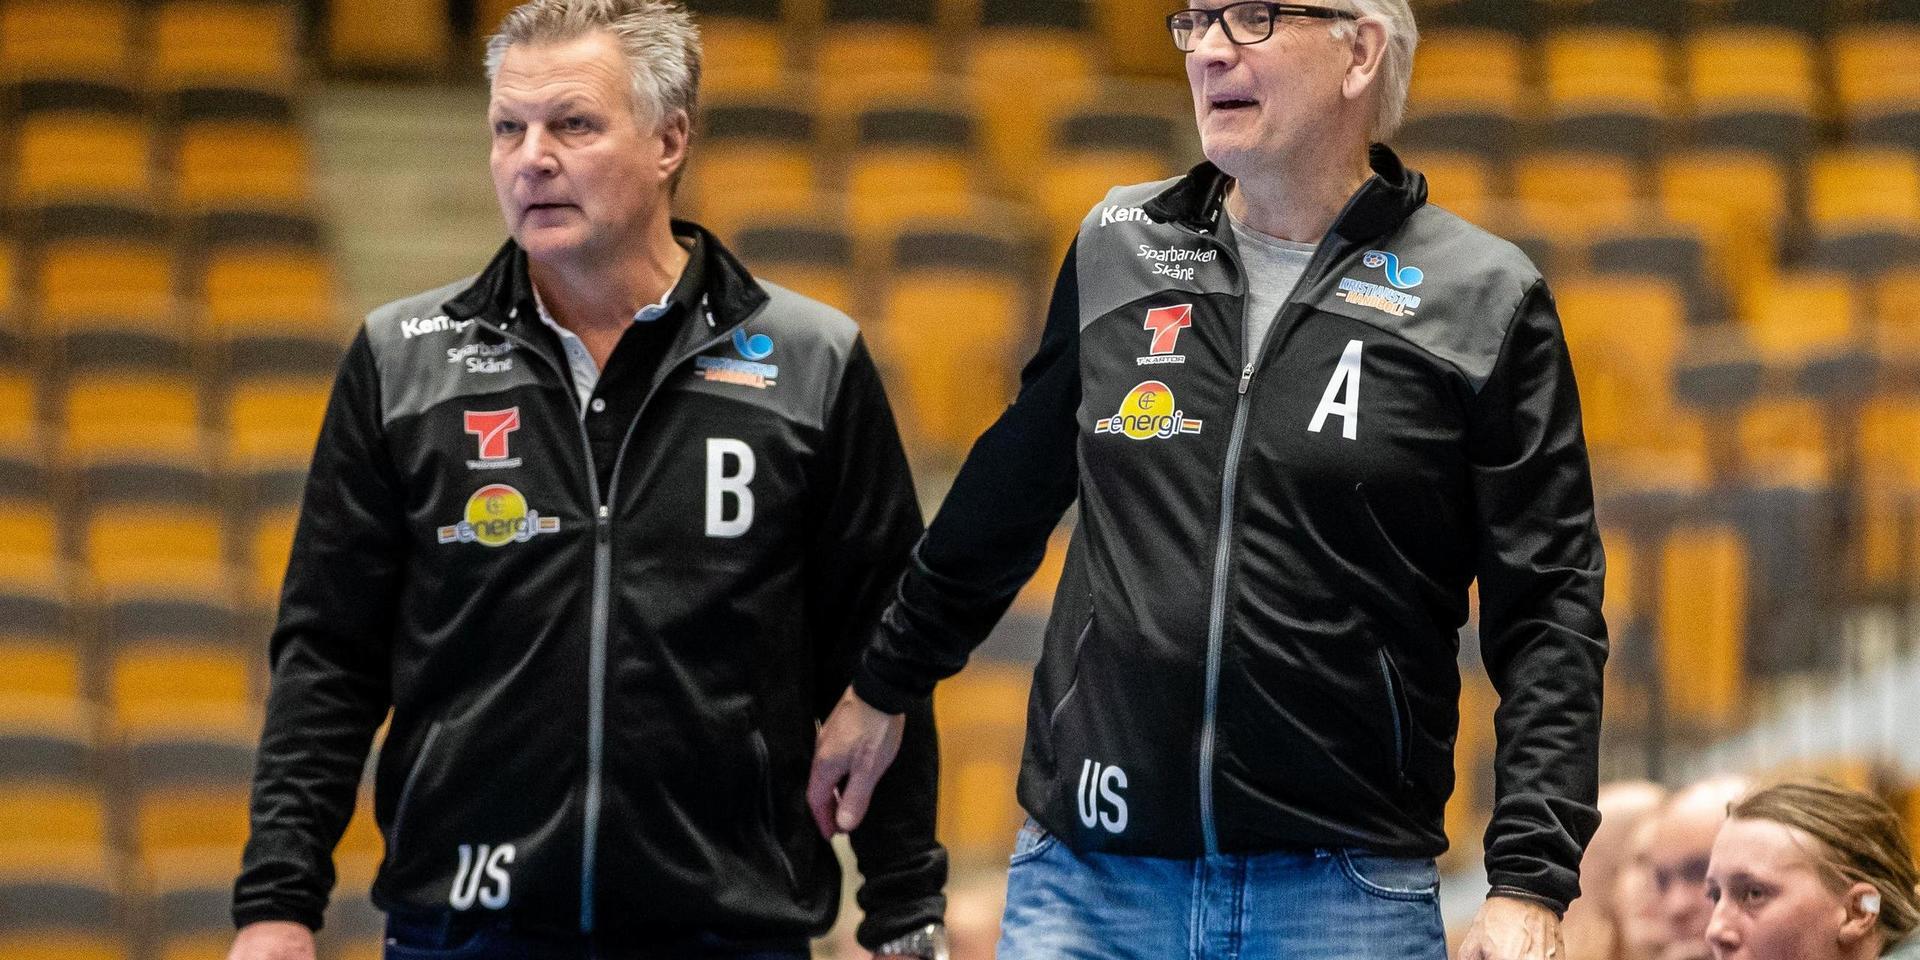 Ulf Sivertsson (till vänster) har sedan i oktober varit assisterande tränare till Ulf Schefvert (till höger) i Kristianstad HK i damligan SHE. Nästa säsong byter de båda ex-drottarna positioner – Schefvert tar ett kliv tillbaka och Sivertsson är klar som ny chefstränare.